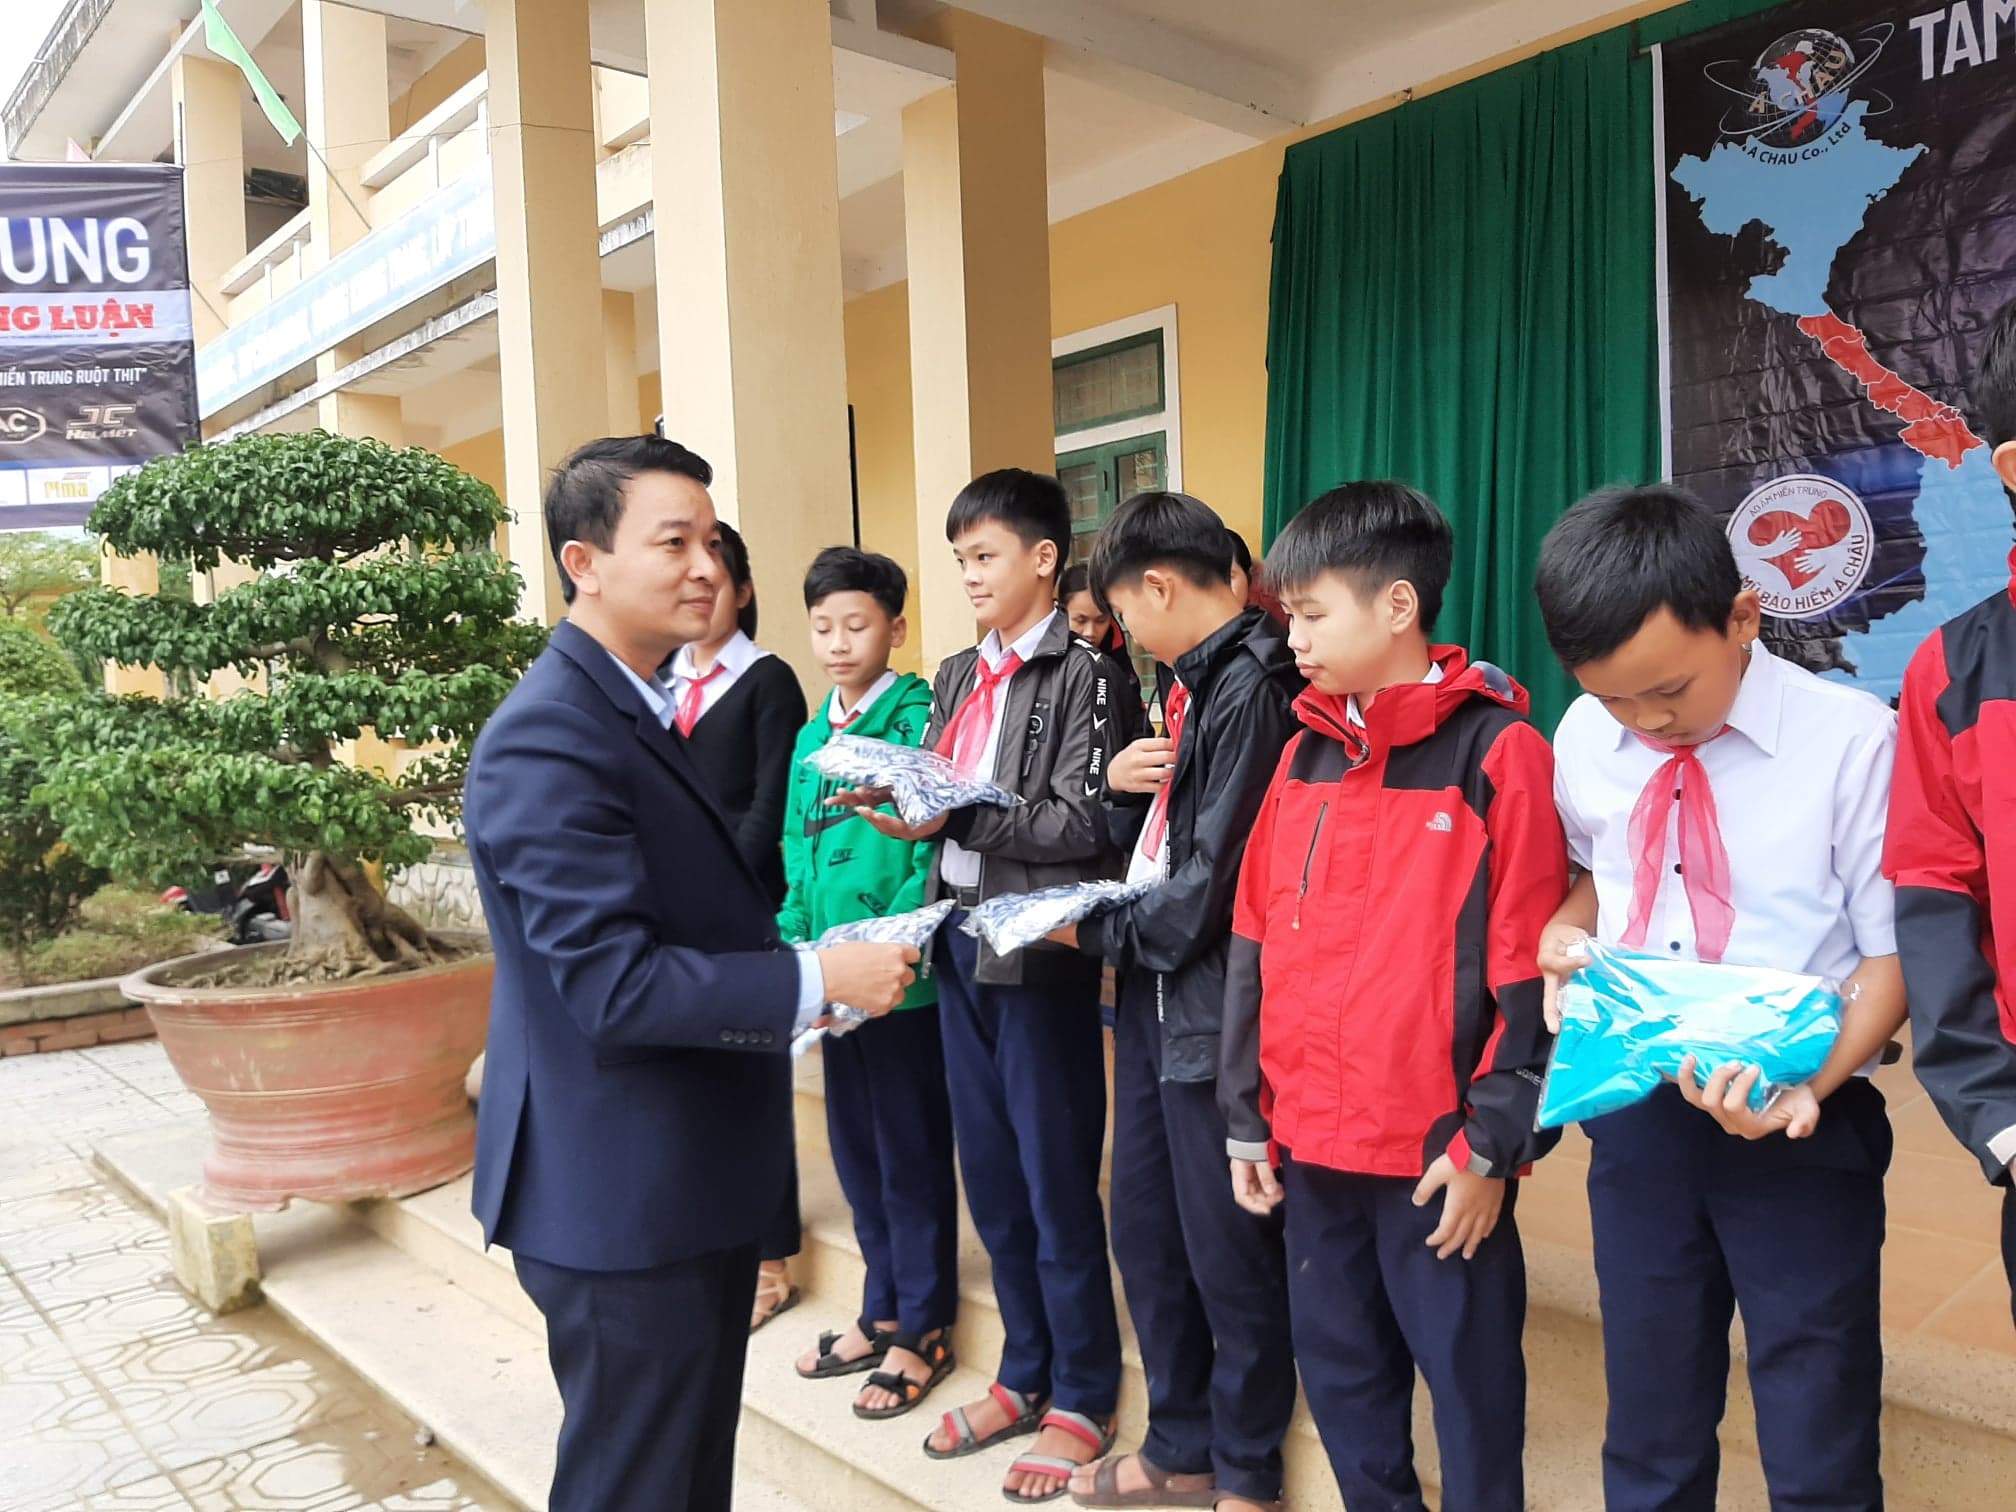 Ông Võ Văn Minh, Phó Giám đốc Sở Giáo dục và Đào tạo tỉnh Quảng Trị tham dự và trao quà cho các em học sinh.